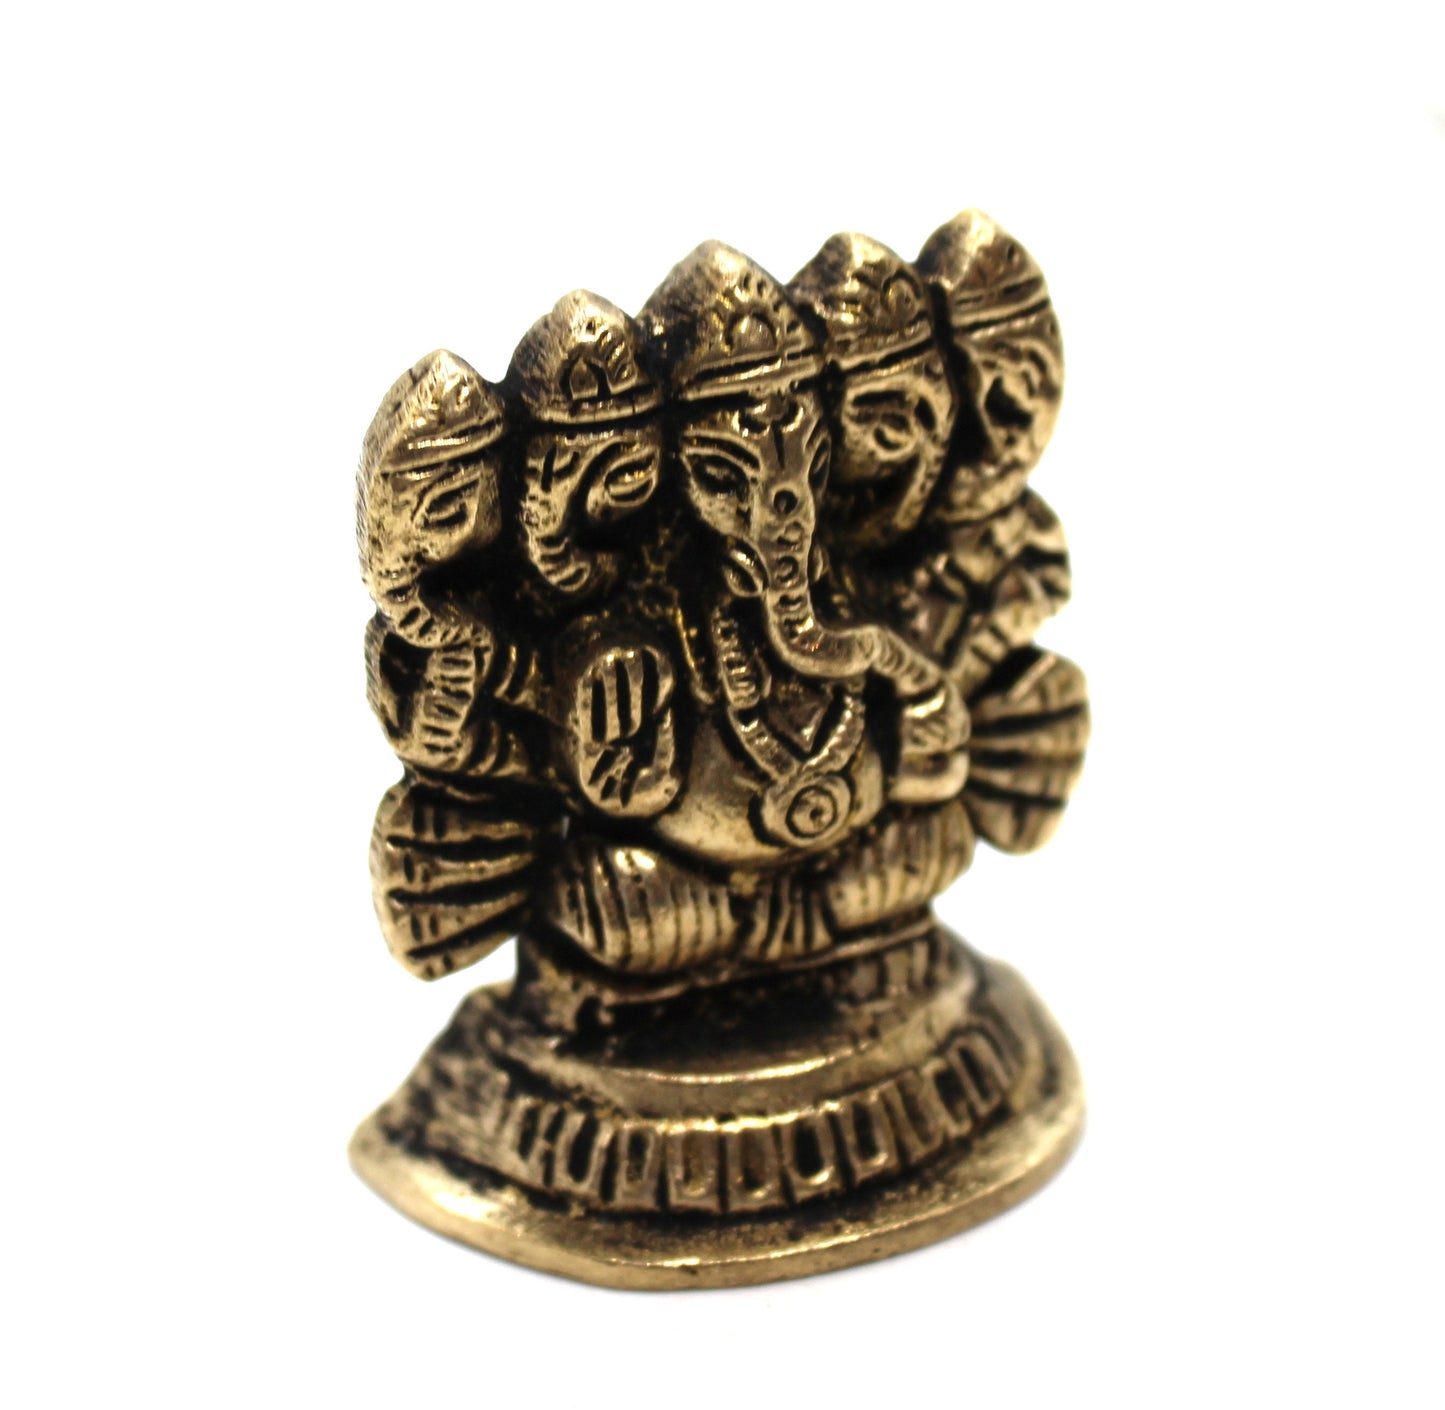 Small Ganesha Statue in Brass, 4 CM Brass Ganesh Idol Small, Ganapati Murti, Vinayaka for Hindu God of good luck, success & new beginnings